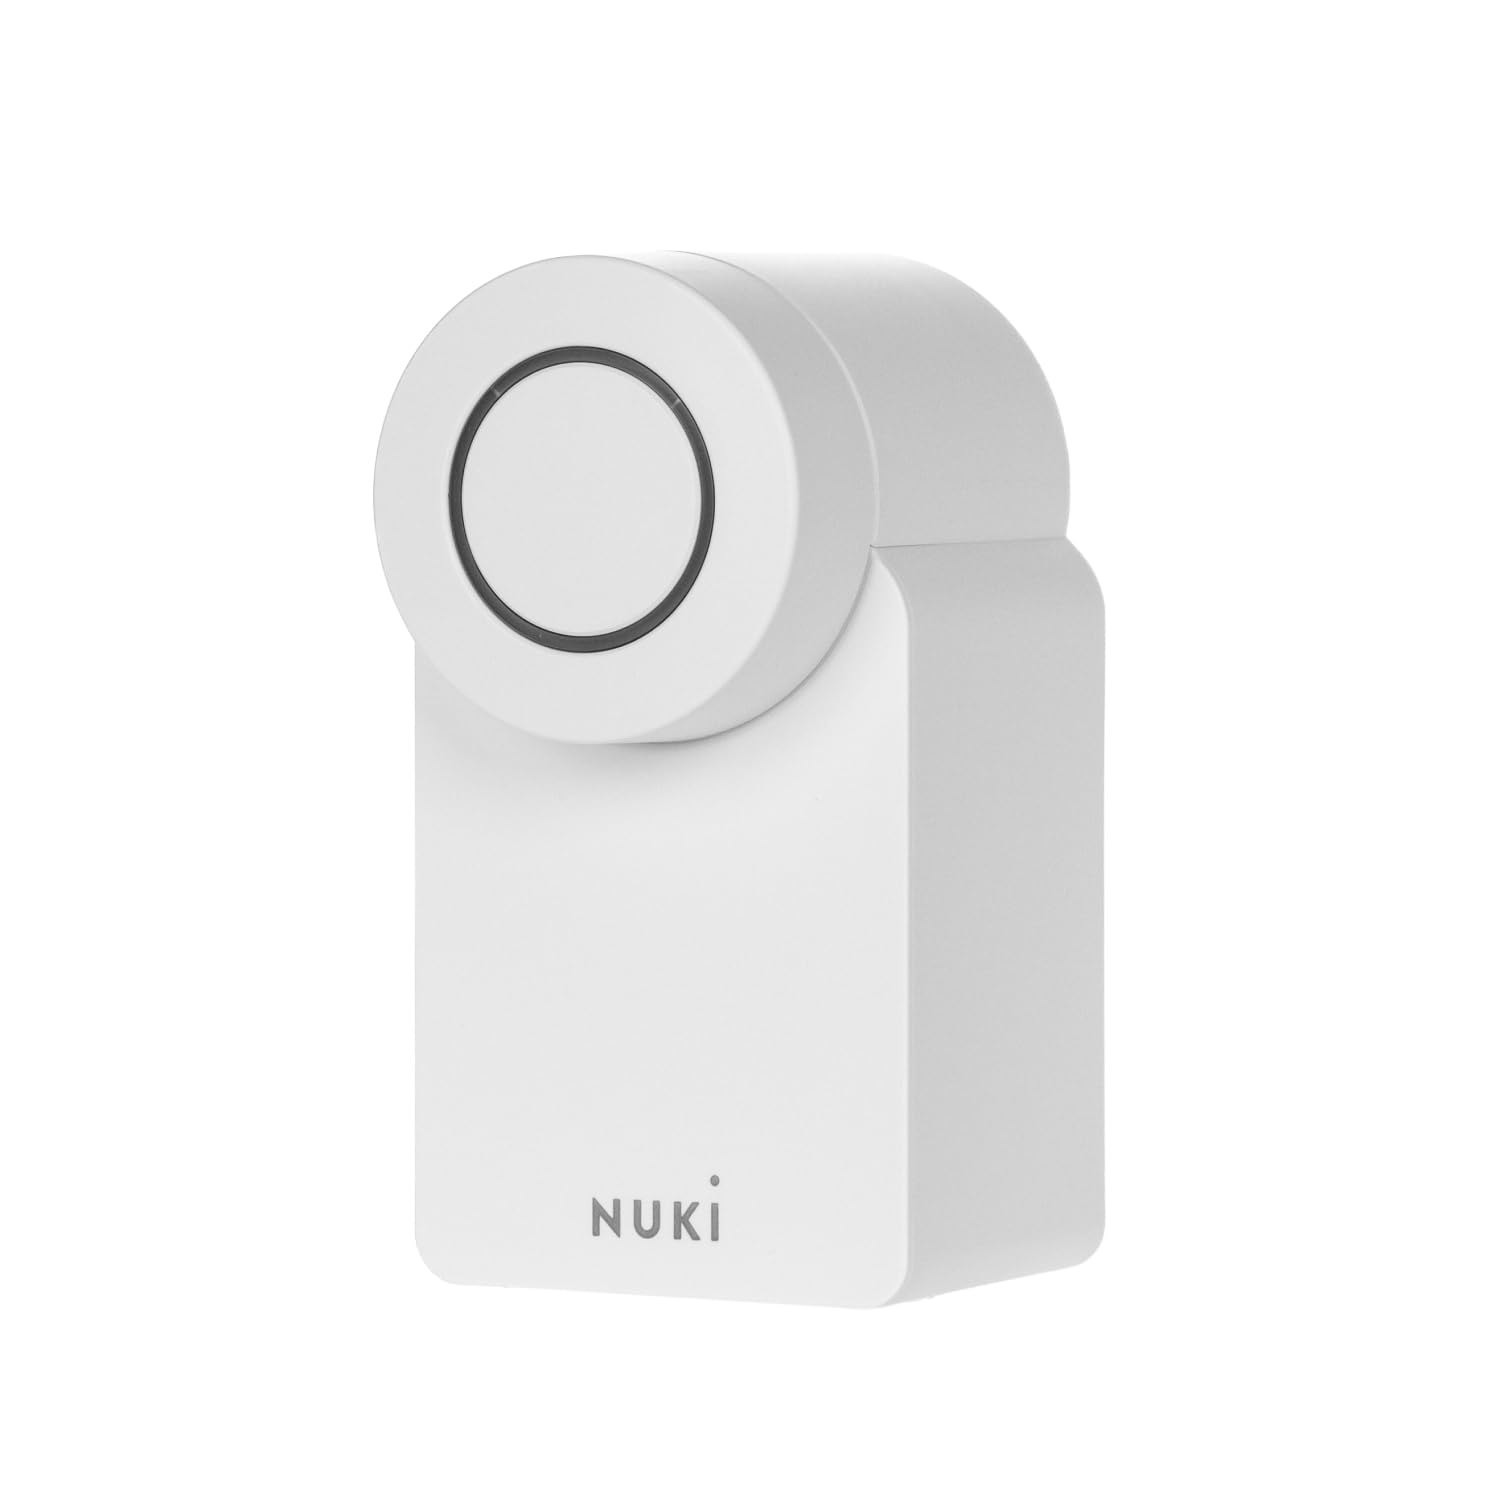 Nuki Smart Lock (4. Generation), smartes Türschloss mit Matter für schlüssellosen Zutritt ohne Umbau, elektronisches Türschloss macht das Smartphone zum Schlüssel, weiß